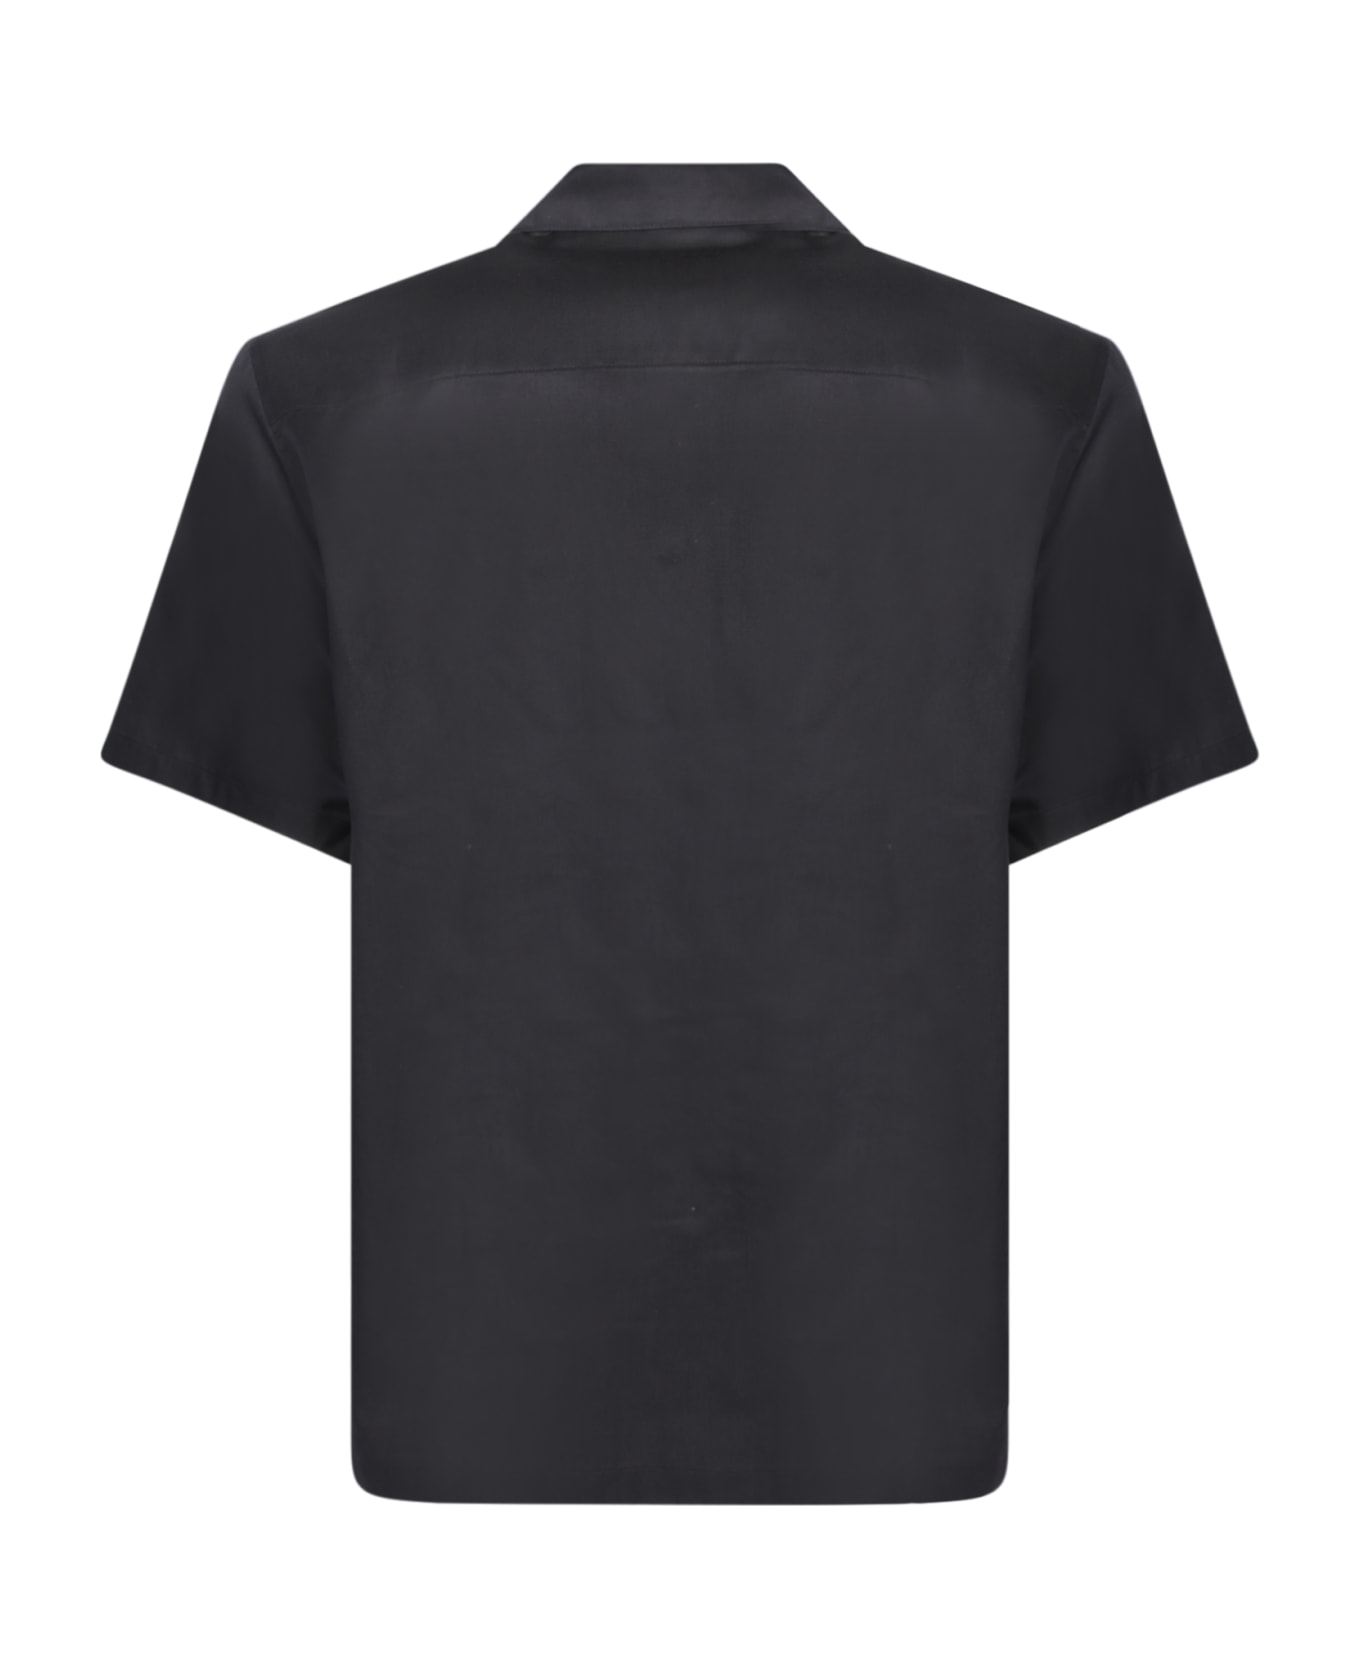 Carhartt Delray Black Shirt - Black